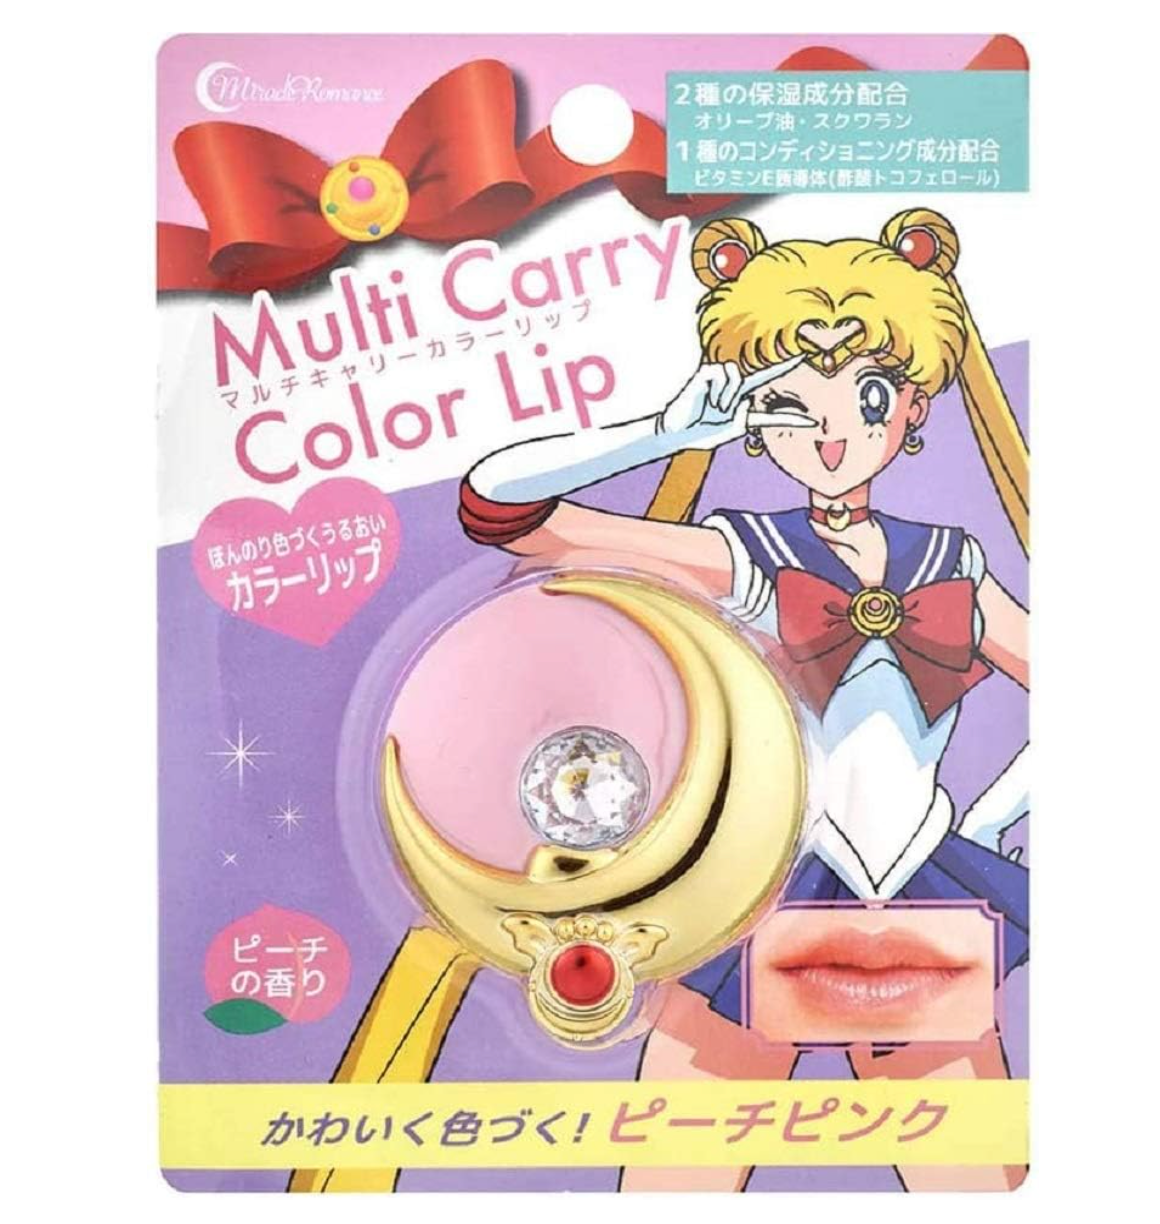 Sailor Moon Multi Carry Color Lip: Peach